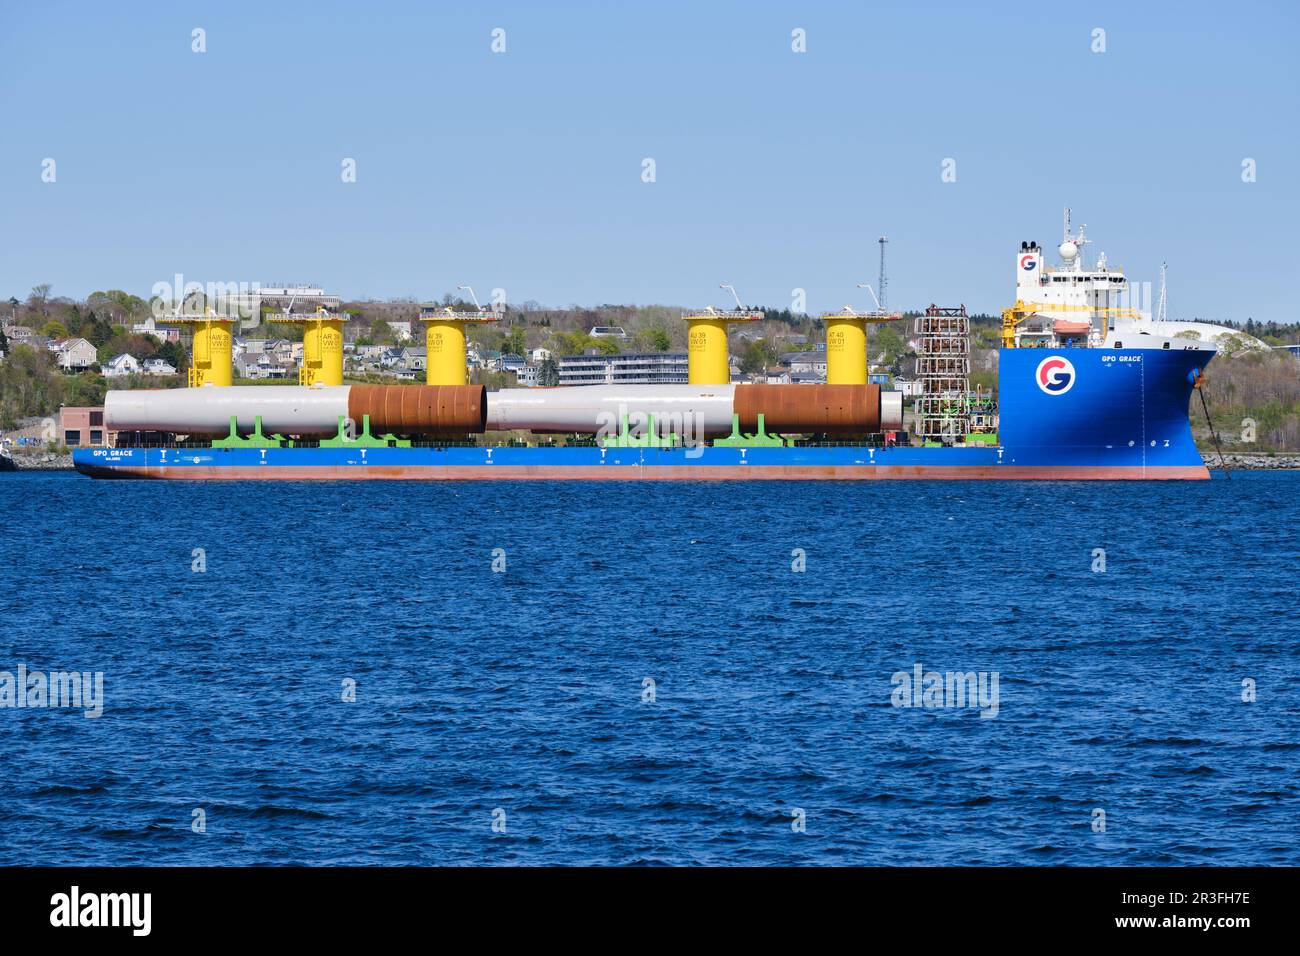 Heavylift Vessel Grazia GPO con carico di parti di turbine eoliche per Vineyard wind1 nel porto di Halifax Foto Stock